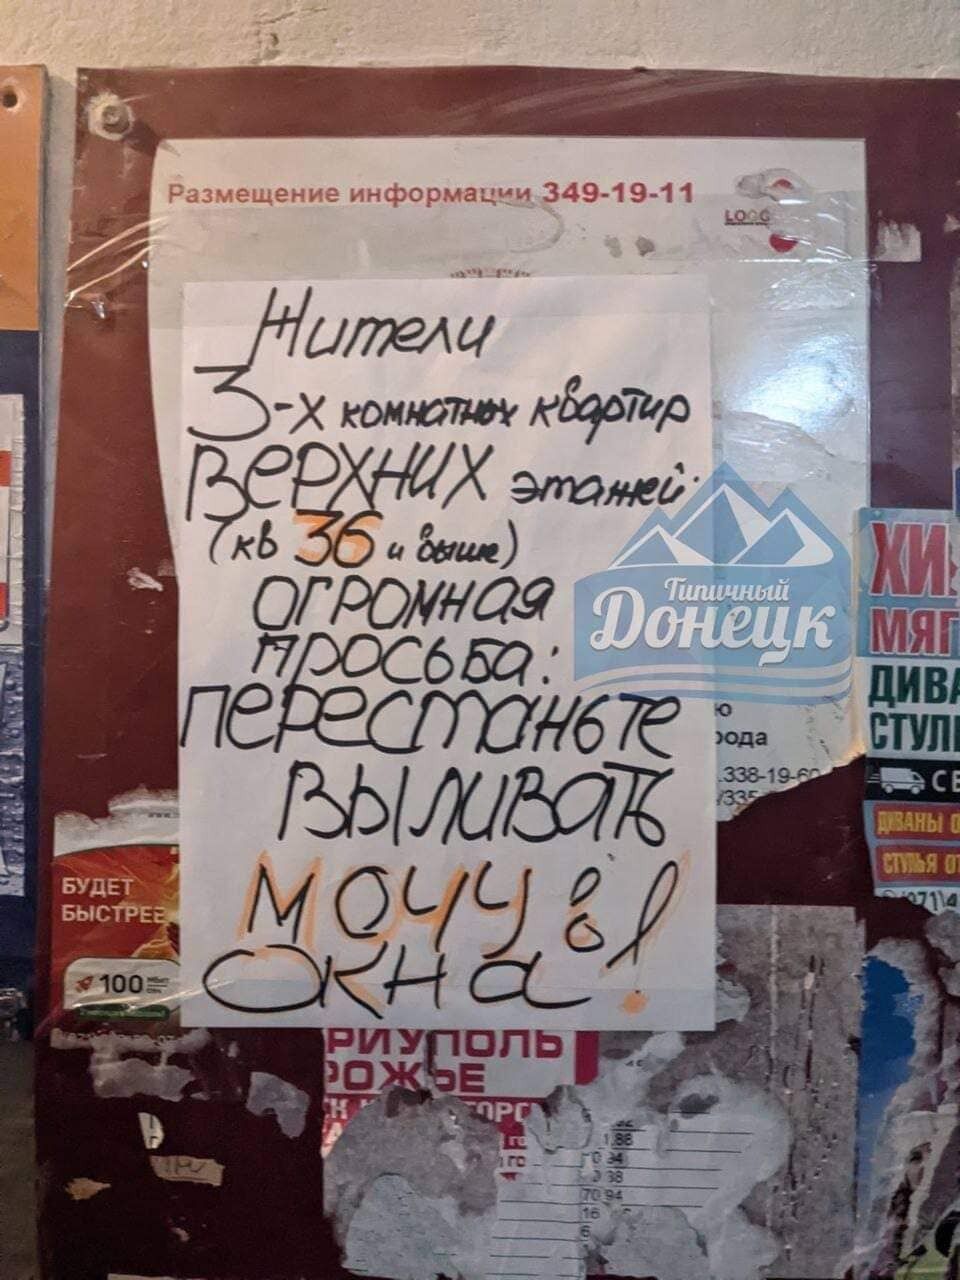 Такі оголошення можна побачити у Донецьку.